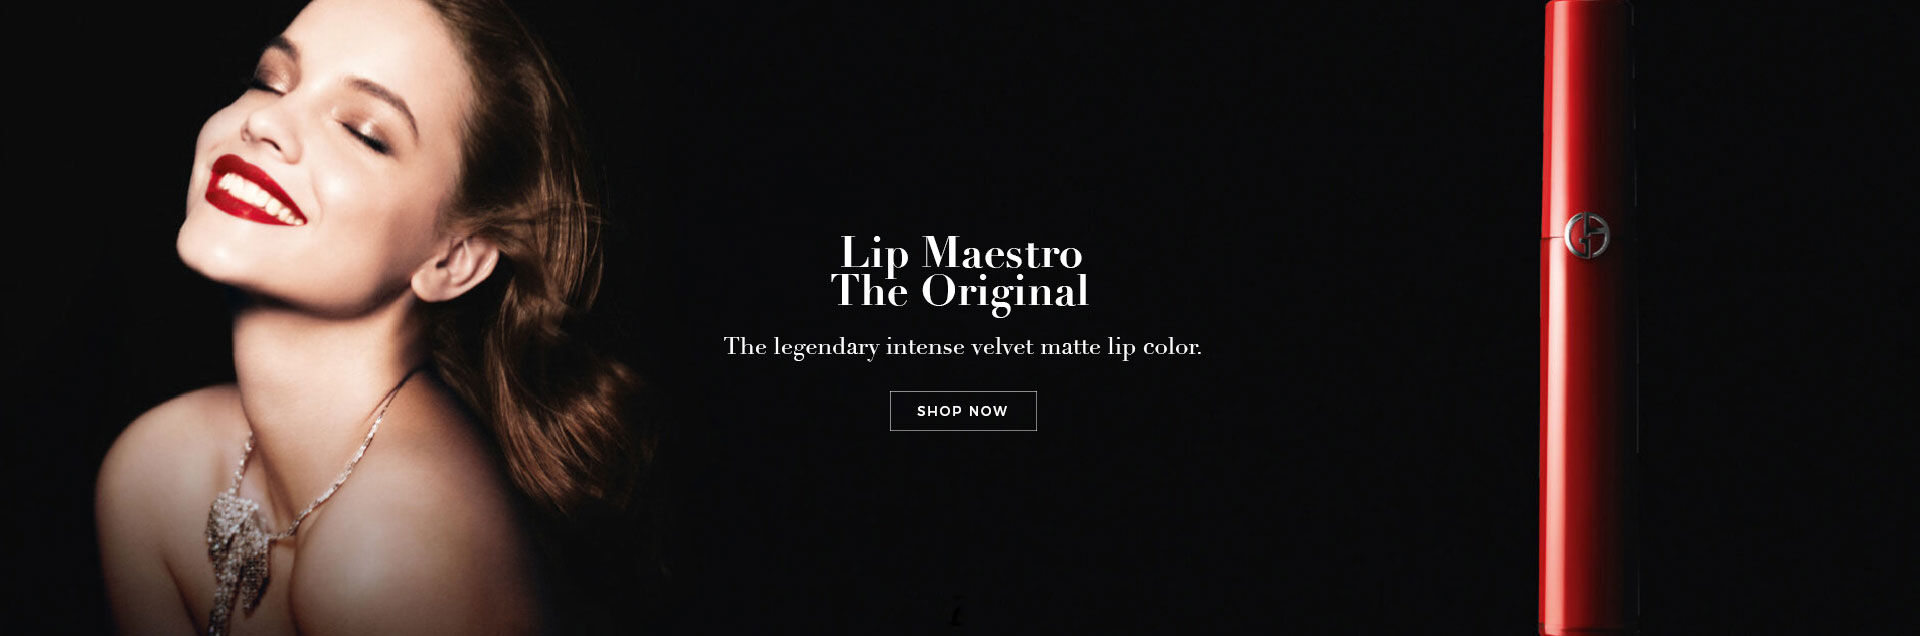 Lip Maestro